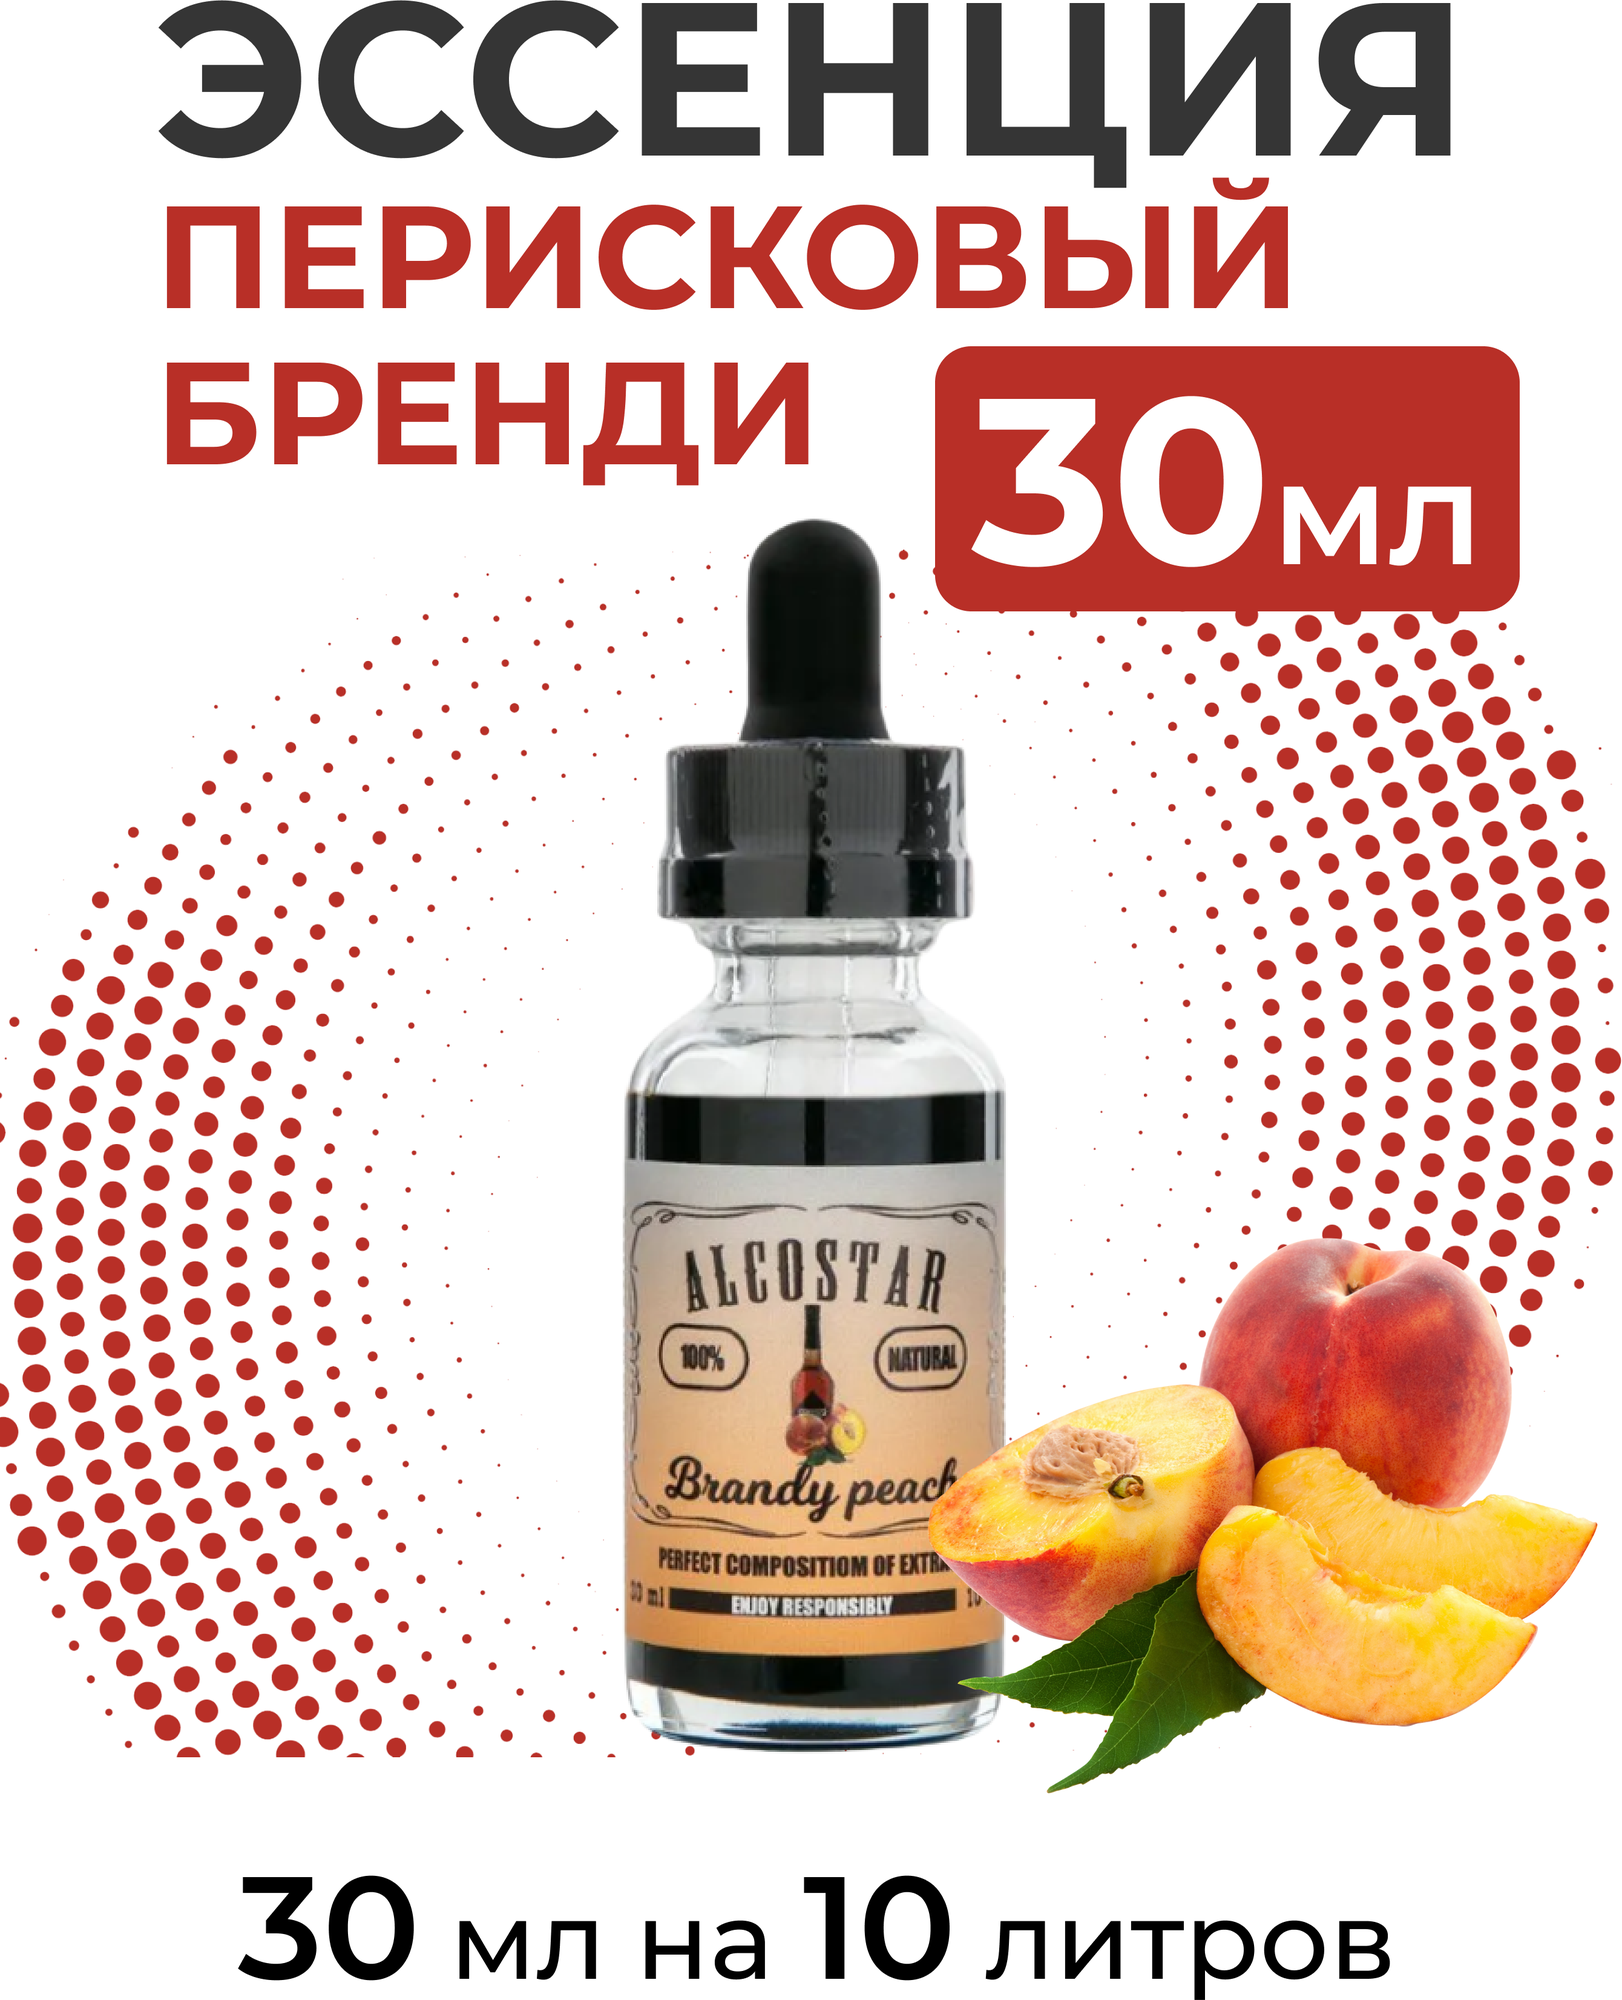 Эссенция Персиковый бренди, Brandy peach Alcostar, вкусовой концентрат (ароматизатор пищевой) для самогона, 30 мл